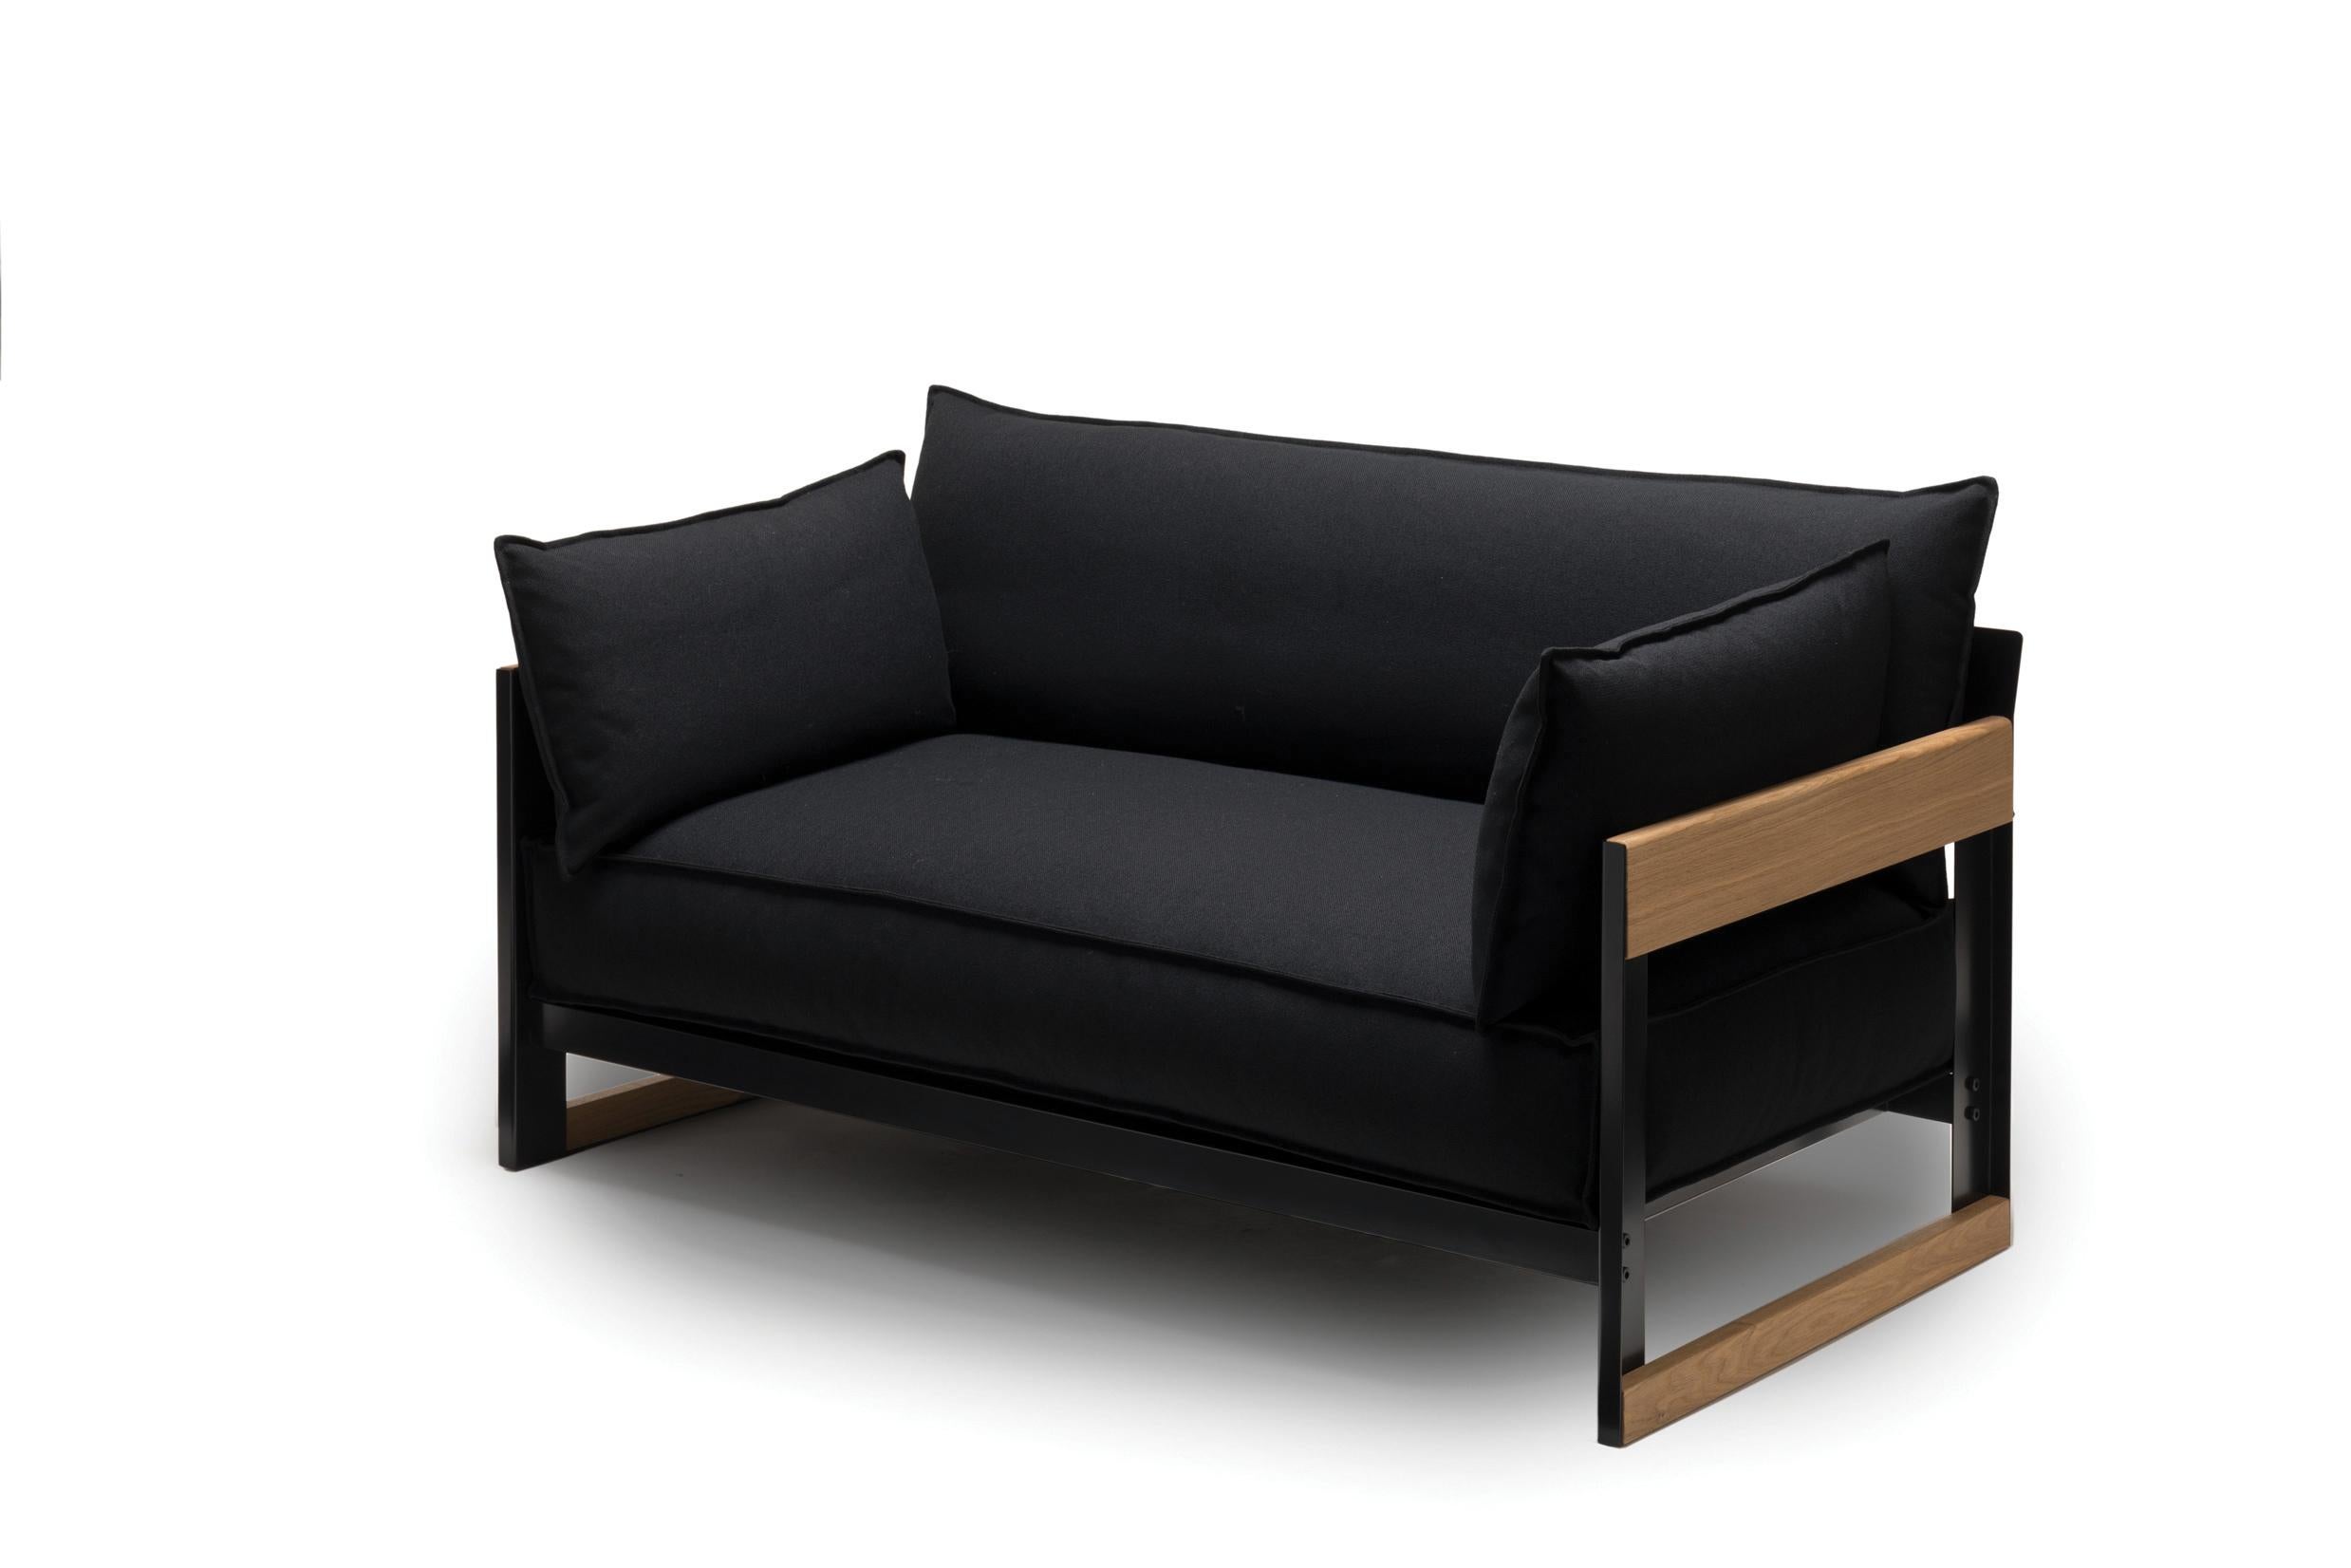 En associant des matériaux contrastés et une forme simple, Ronan et Erwan Bouroullec ont créé un canapé deux et trois places qui est aussi un refuge accueillant. Les larges panneaux du cadre en métal peint par poudrage présentent un profil de bord